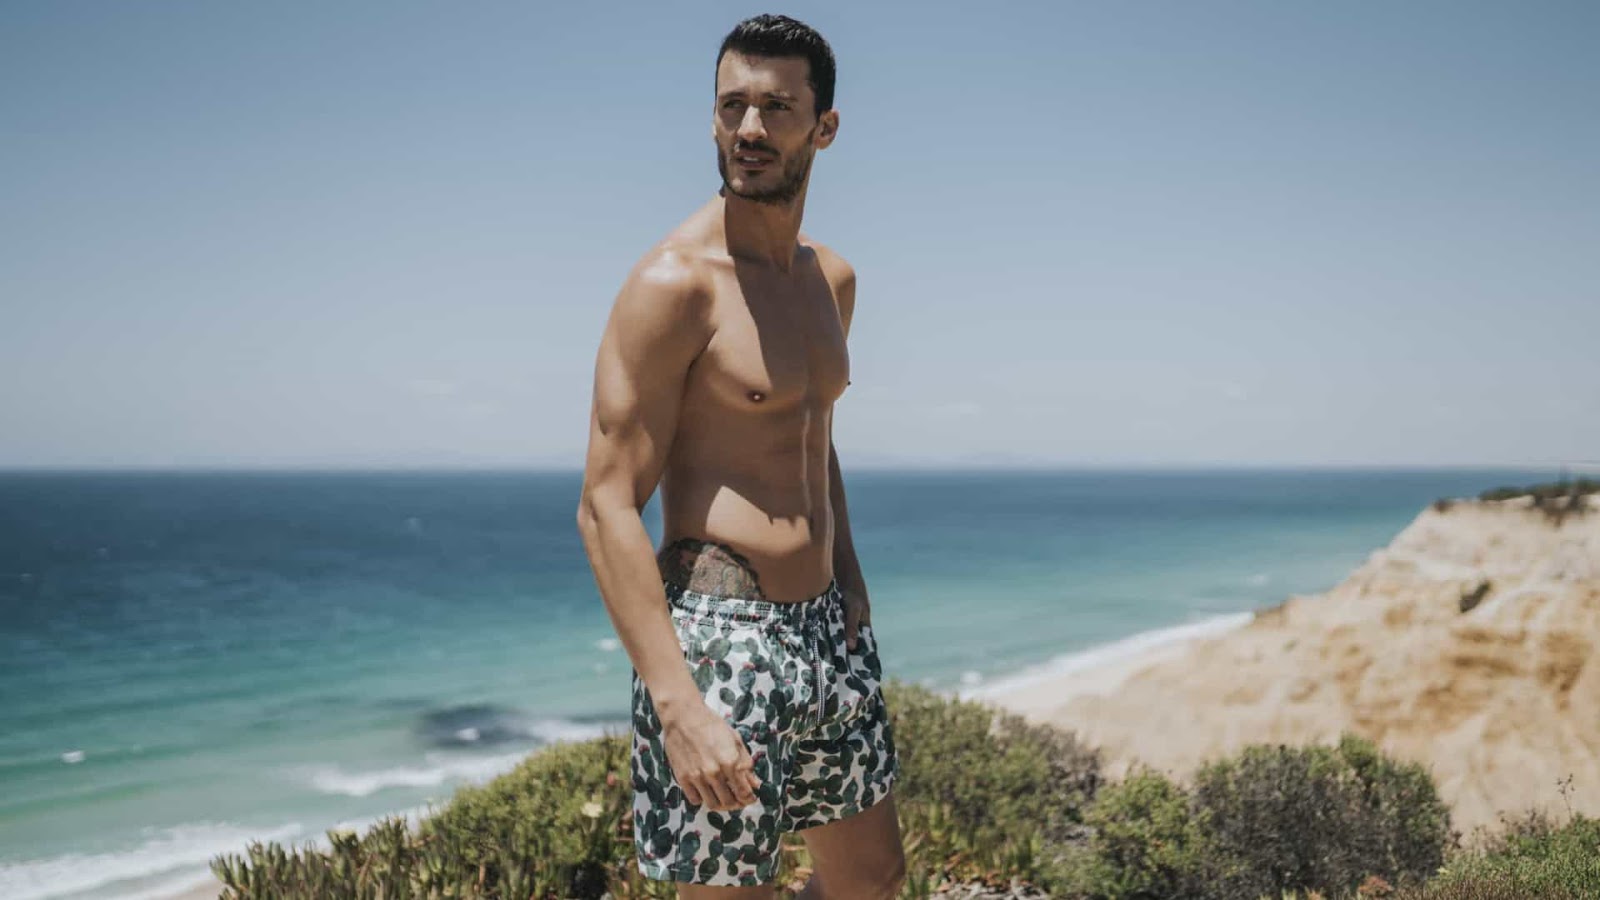 Ruben Rua Stars In The New Wild Summer Campaign For Intimissimi Uomo The Portuguese Male Model